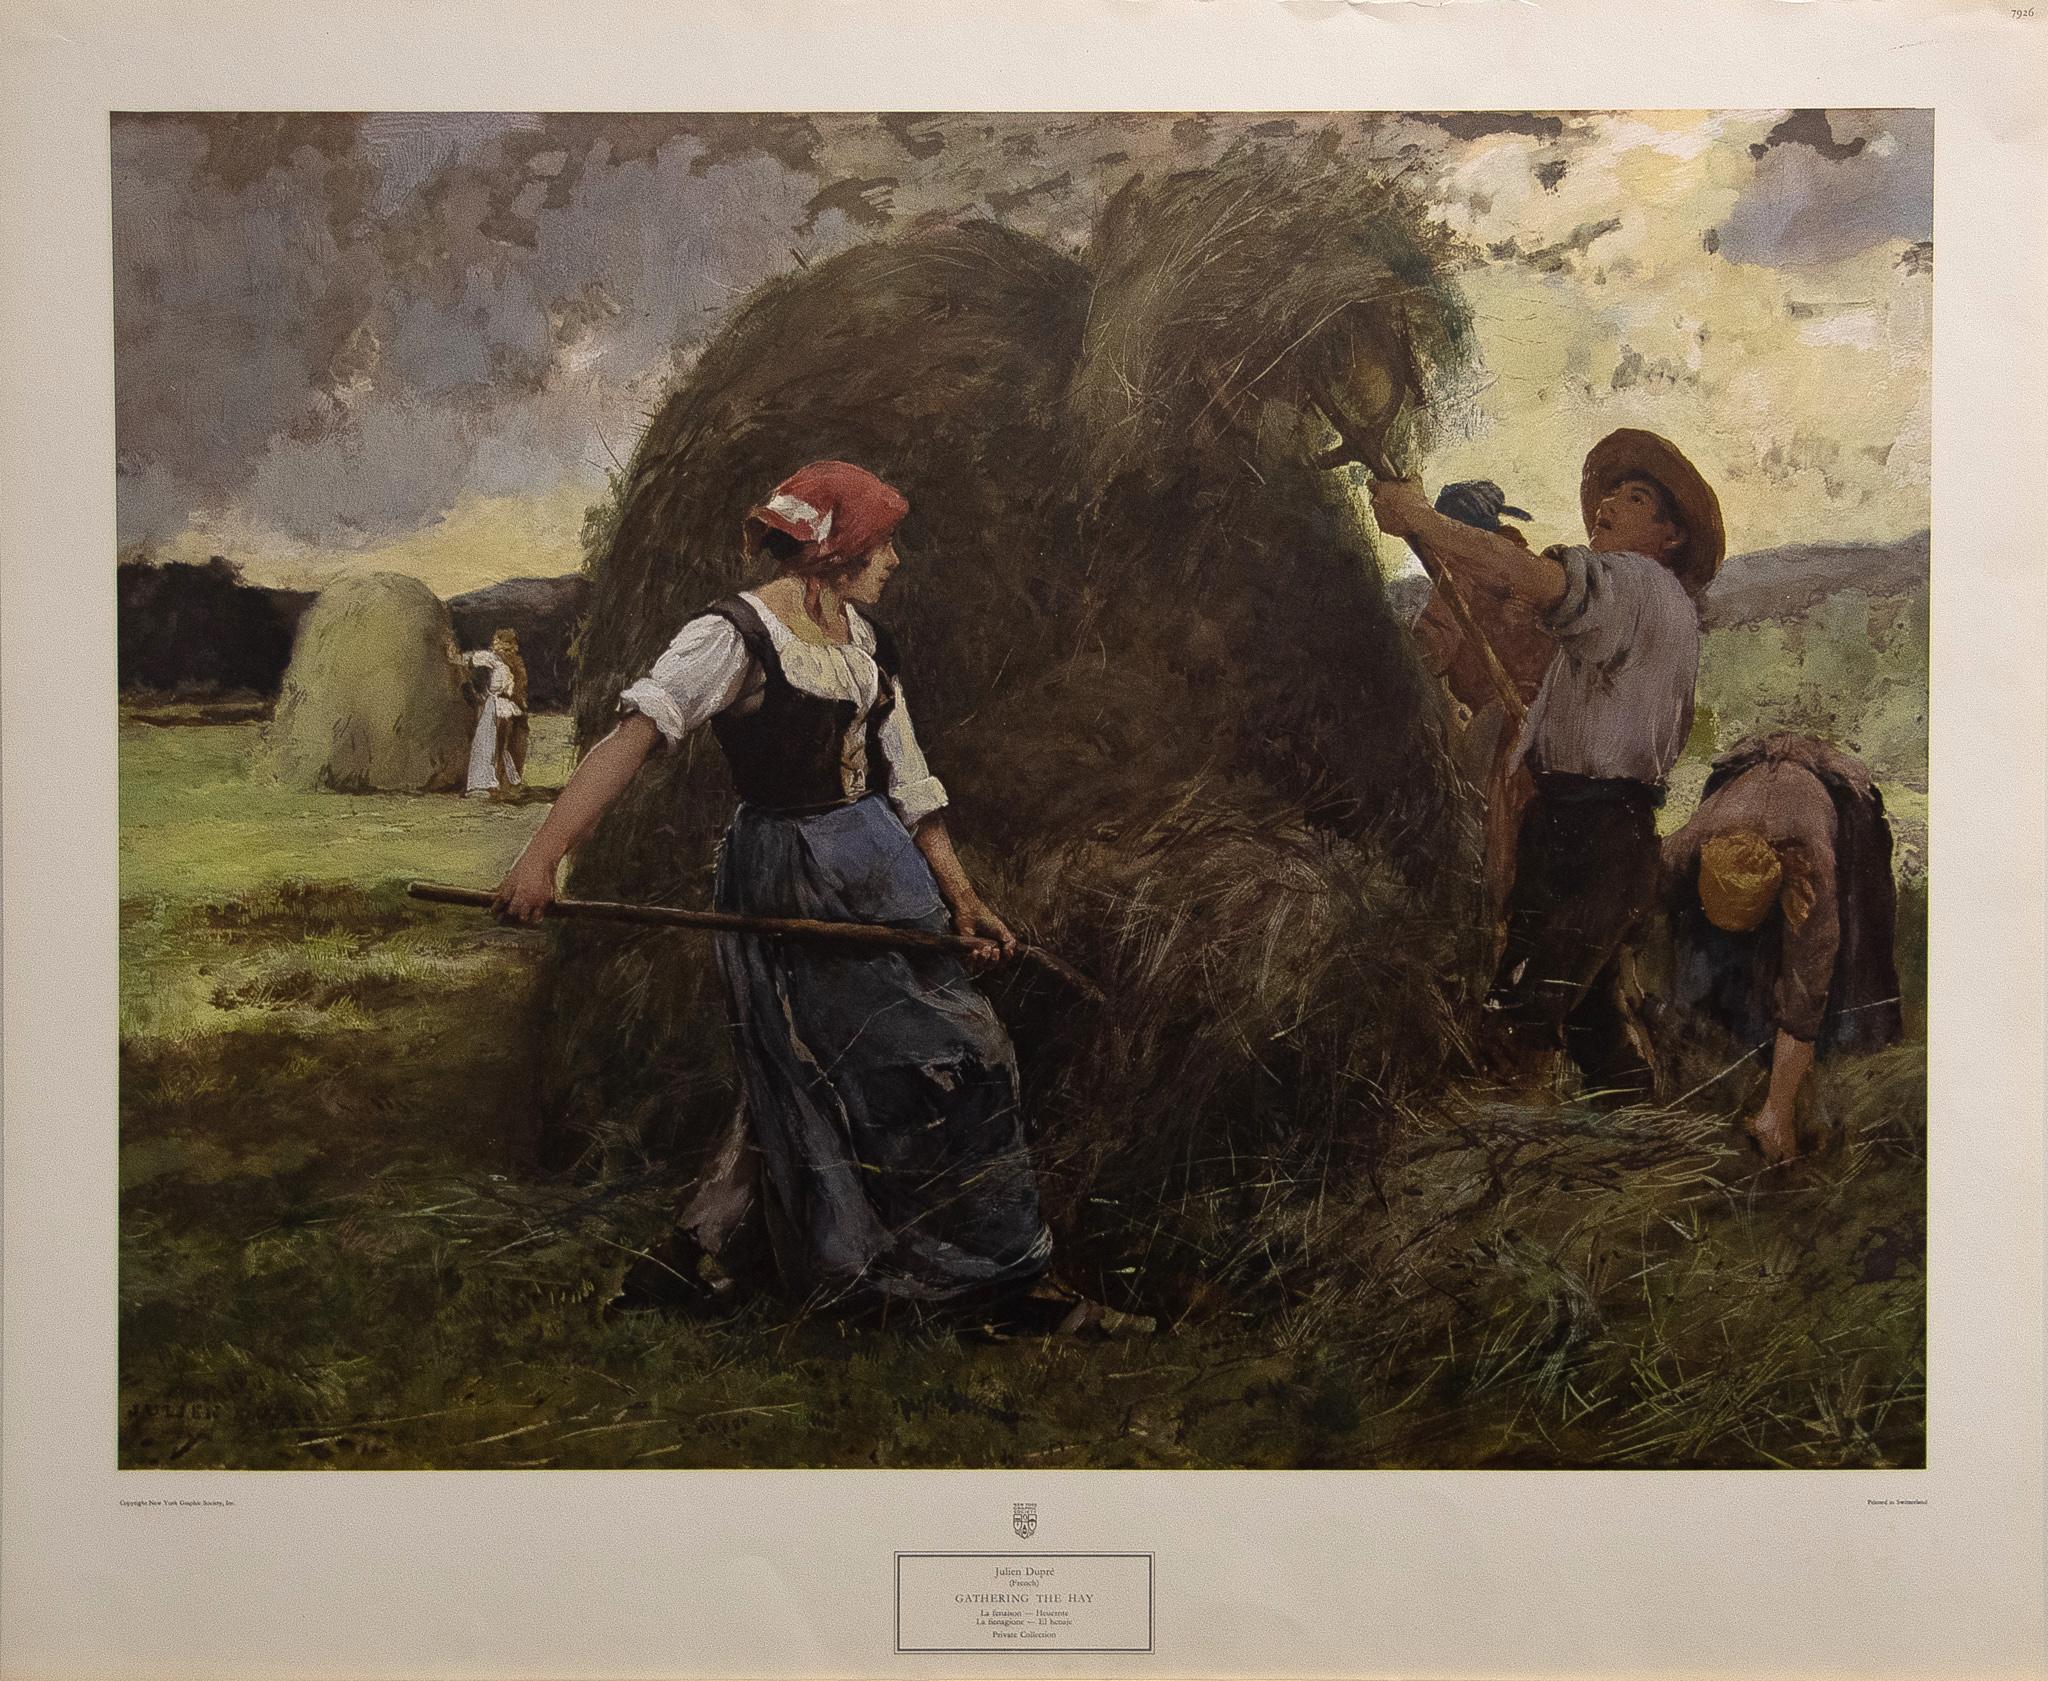 « Gathering the Hay » de Julien Dupr. Imprimé en Suisse.  - Print de Julien Dupre